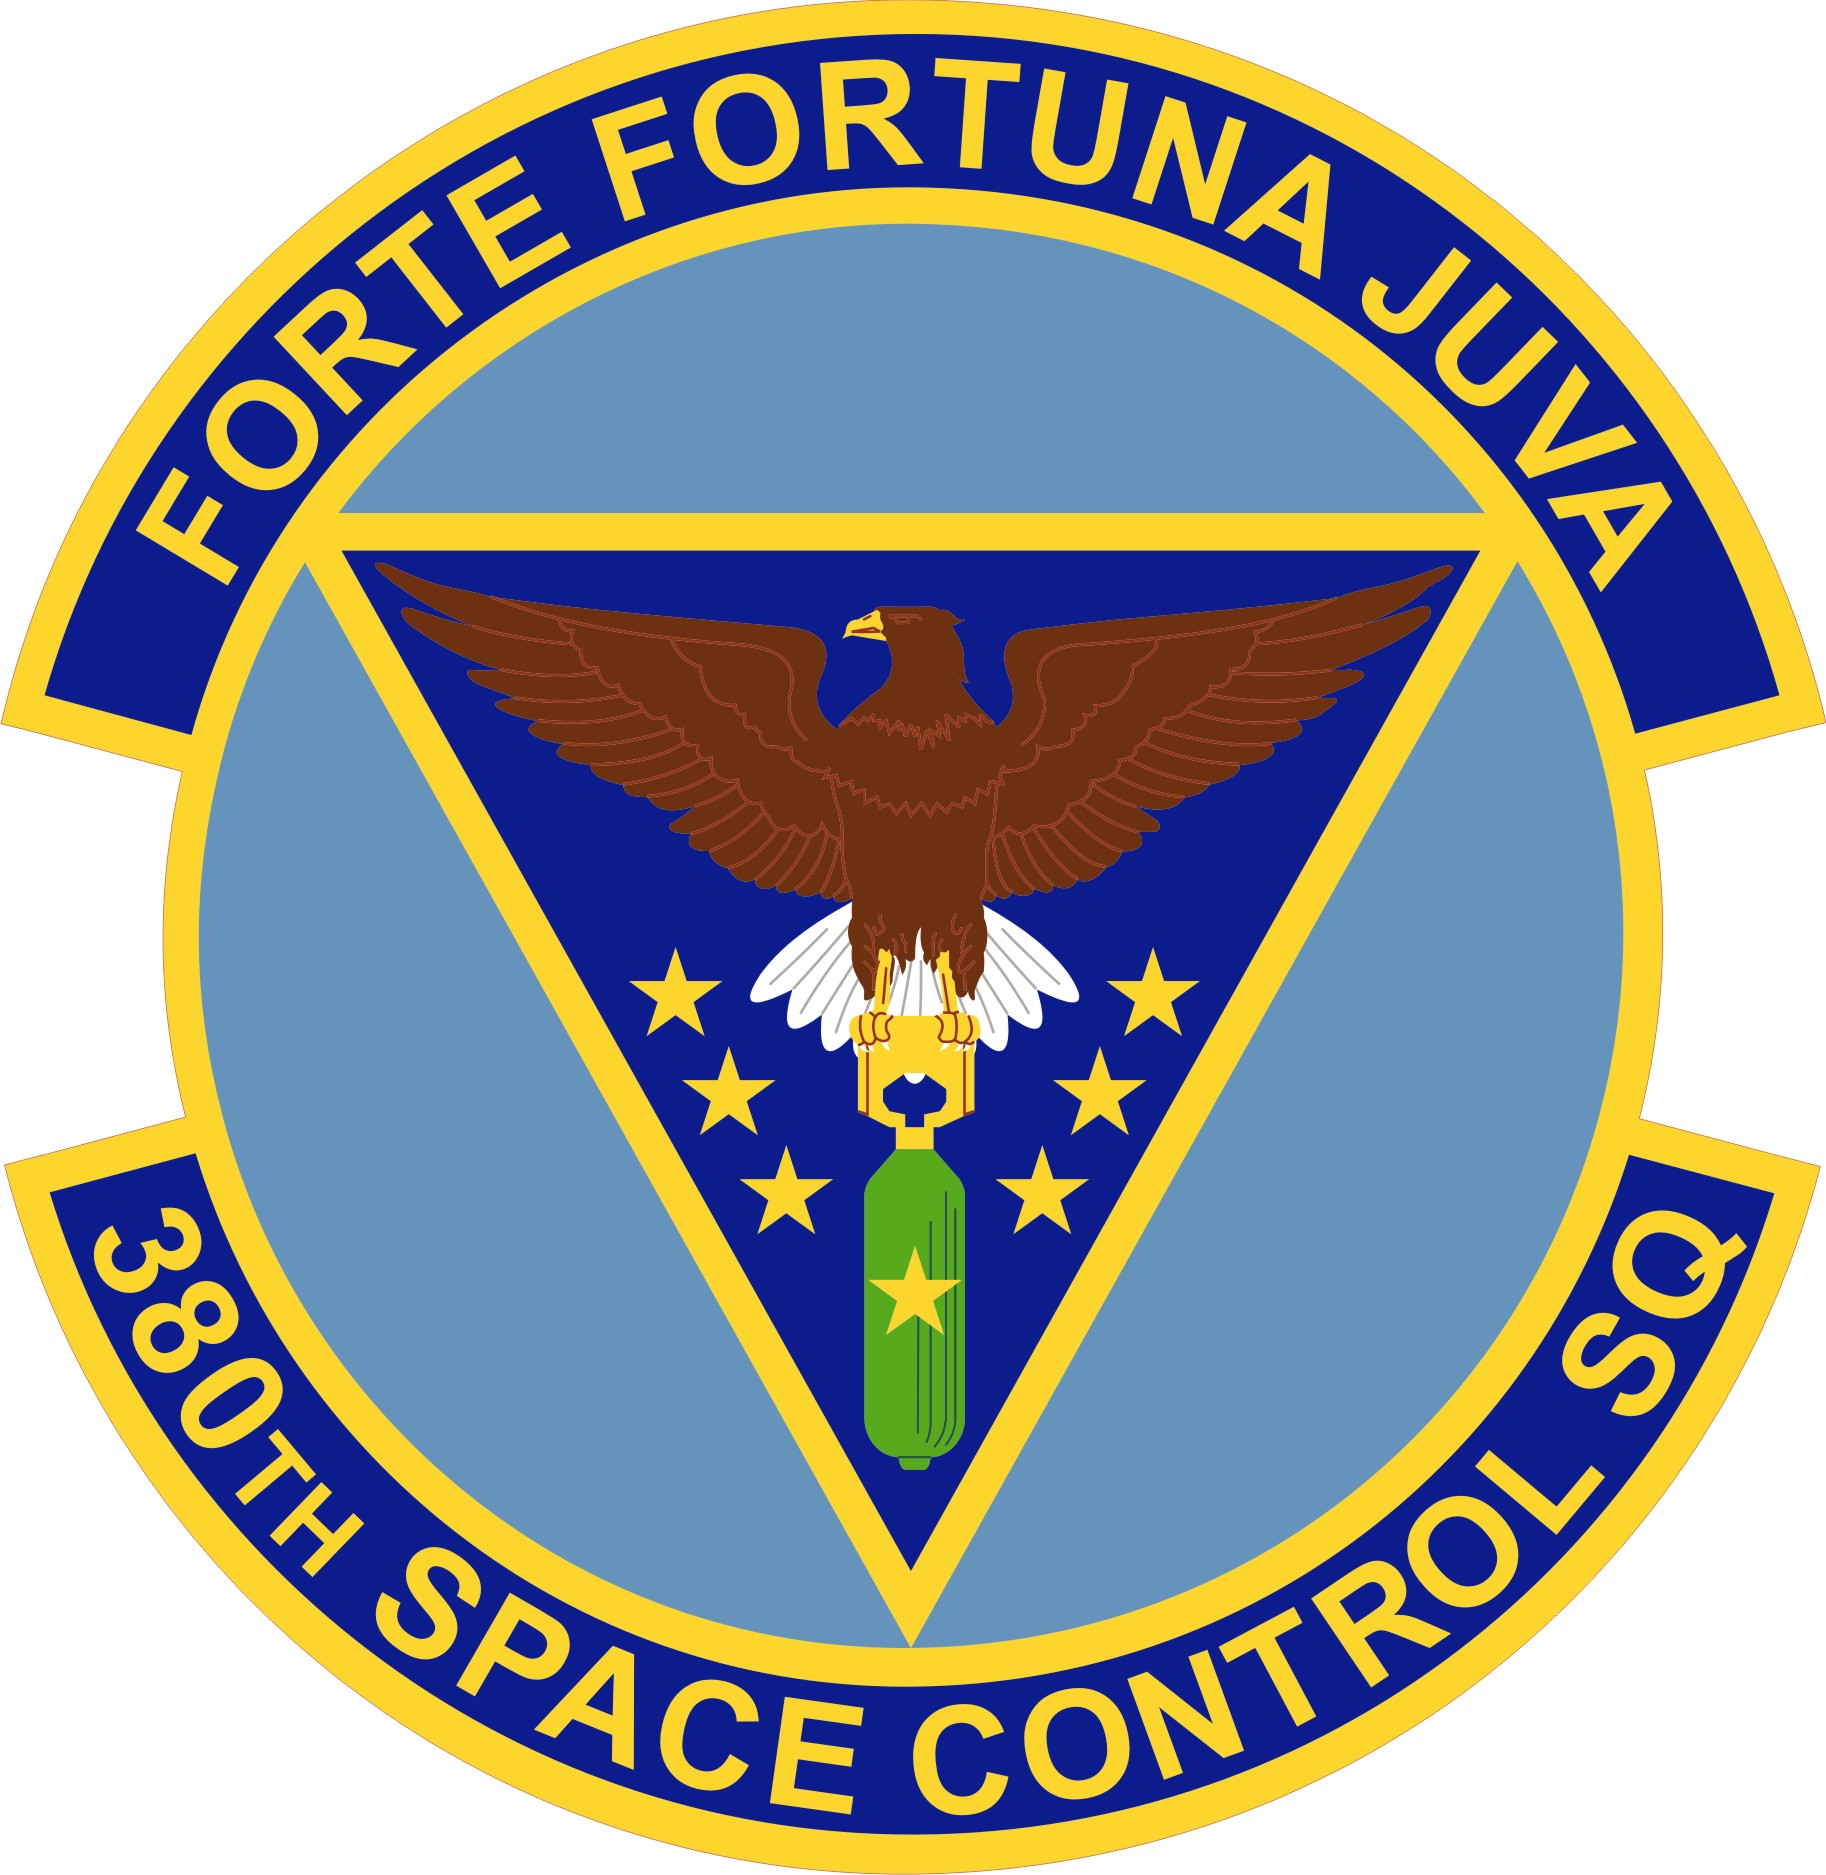 380 Space Control Squadron emblem